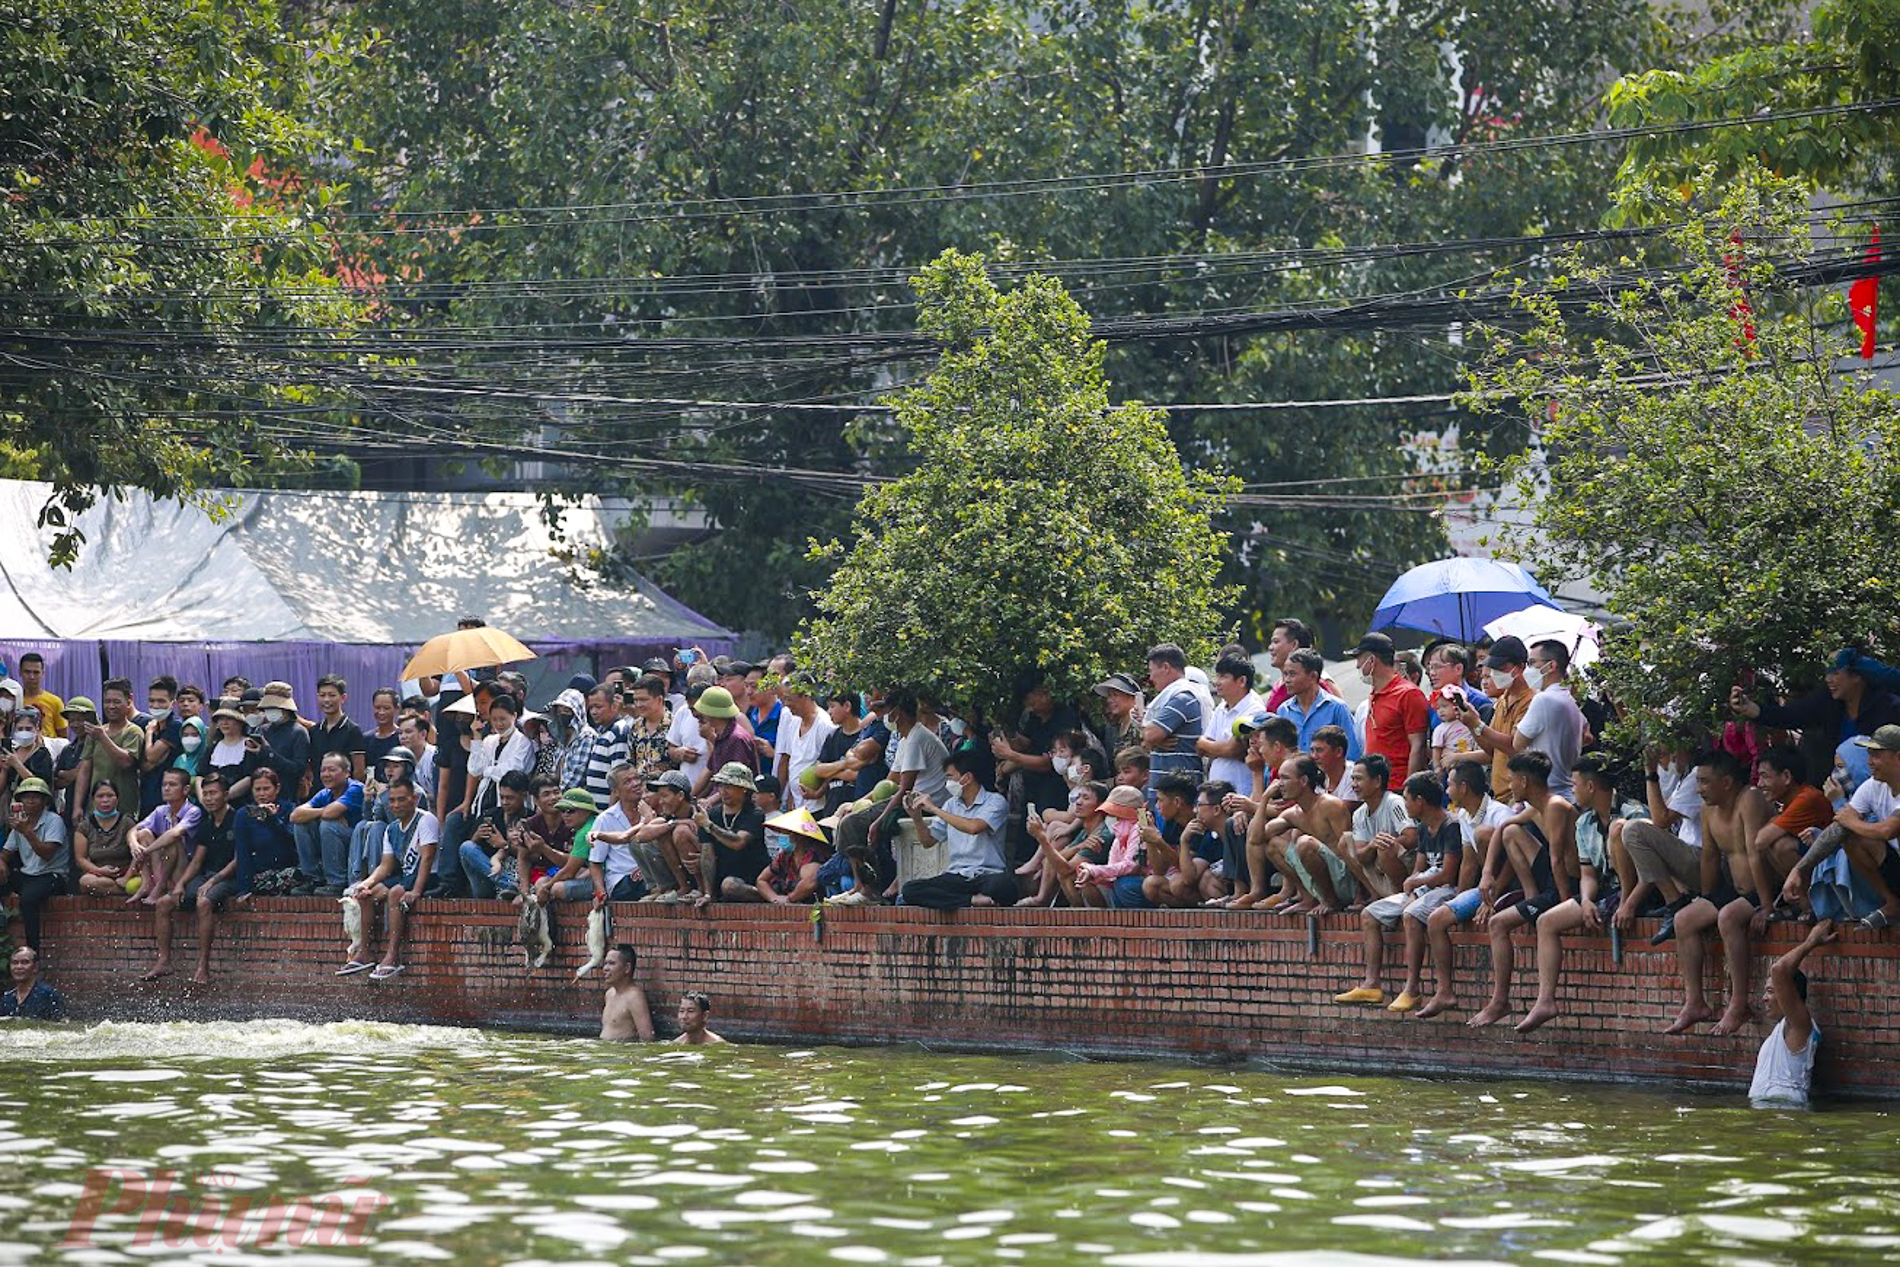 Được tổ chức ngay chính giữa ao làng, trò chơi ném bưởi và thi bơi bắt vịt, thu hút rất đông người tham gia, đặc biệt là các nam thanh niên bơi giỏi.